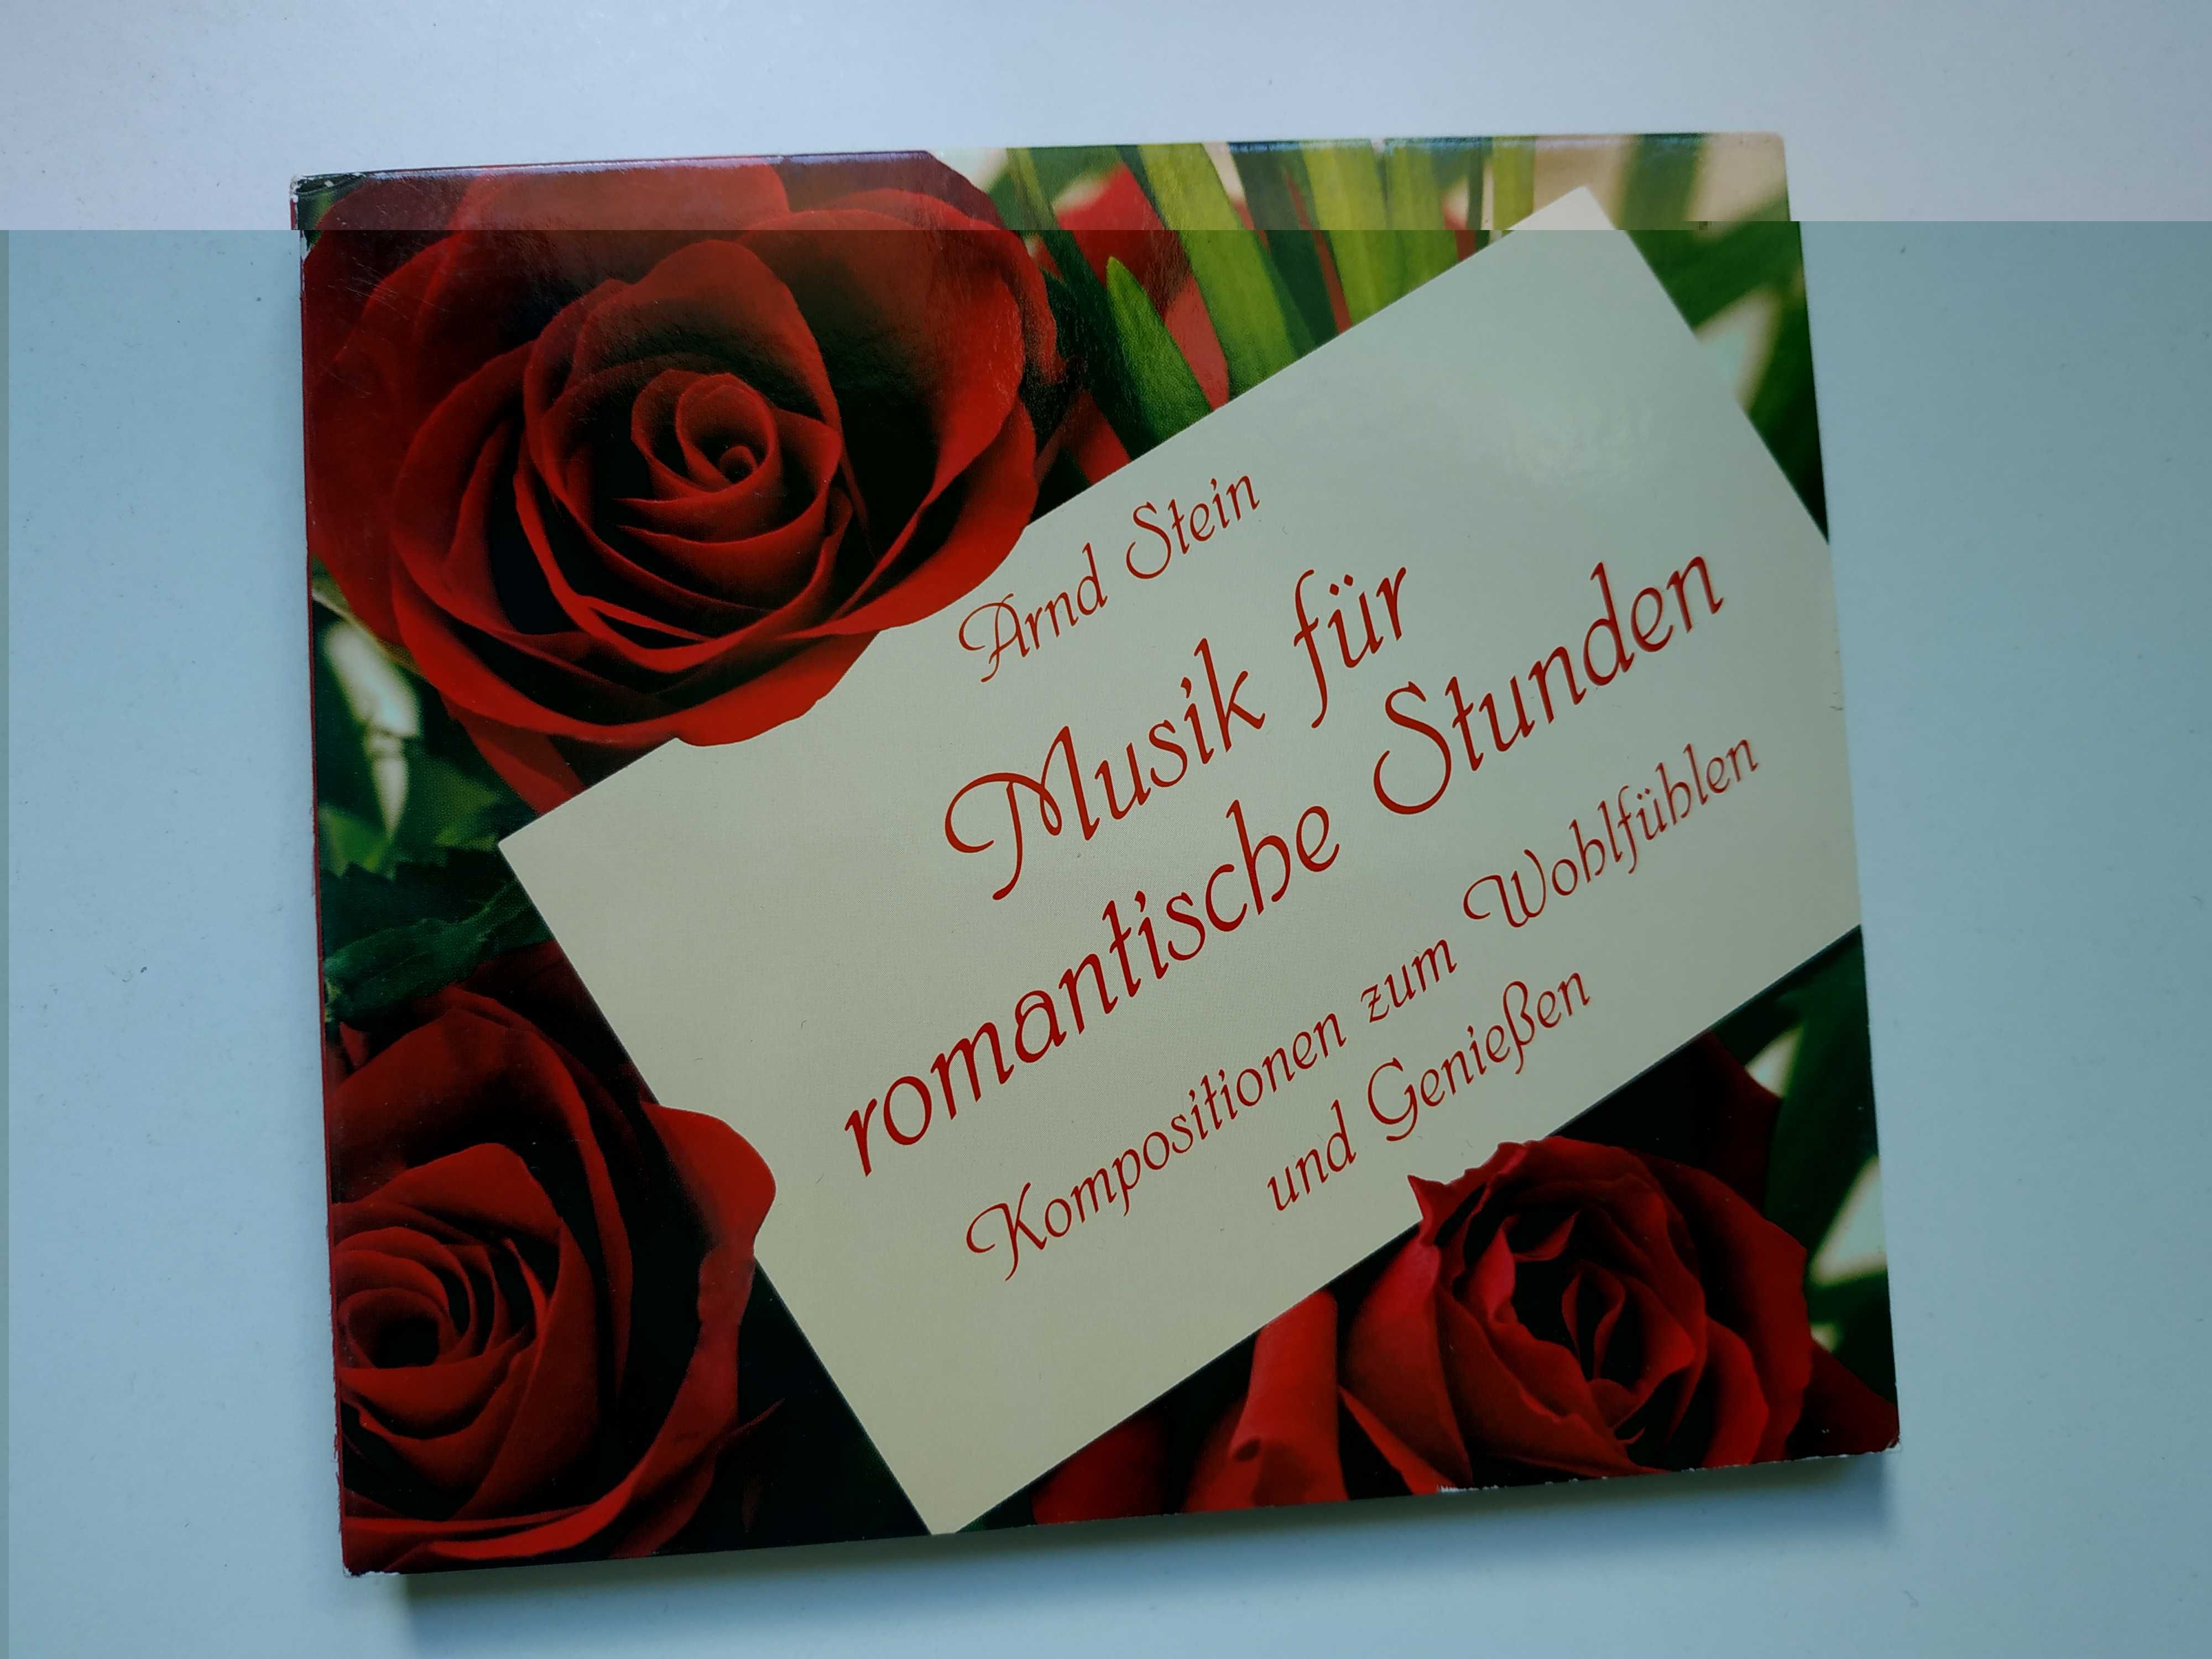 Płyta Arnd Stein - Musik für Romantischen Stunden